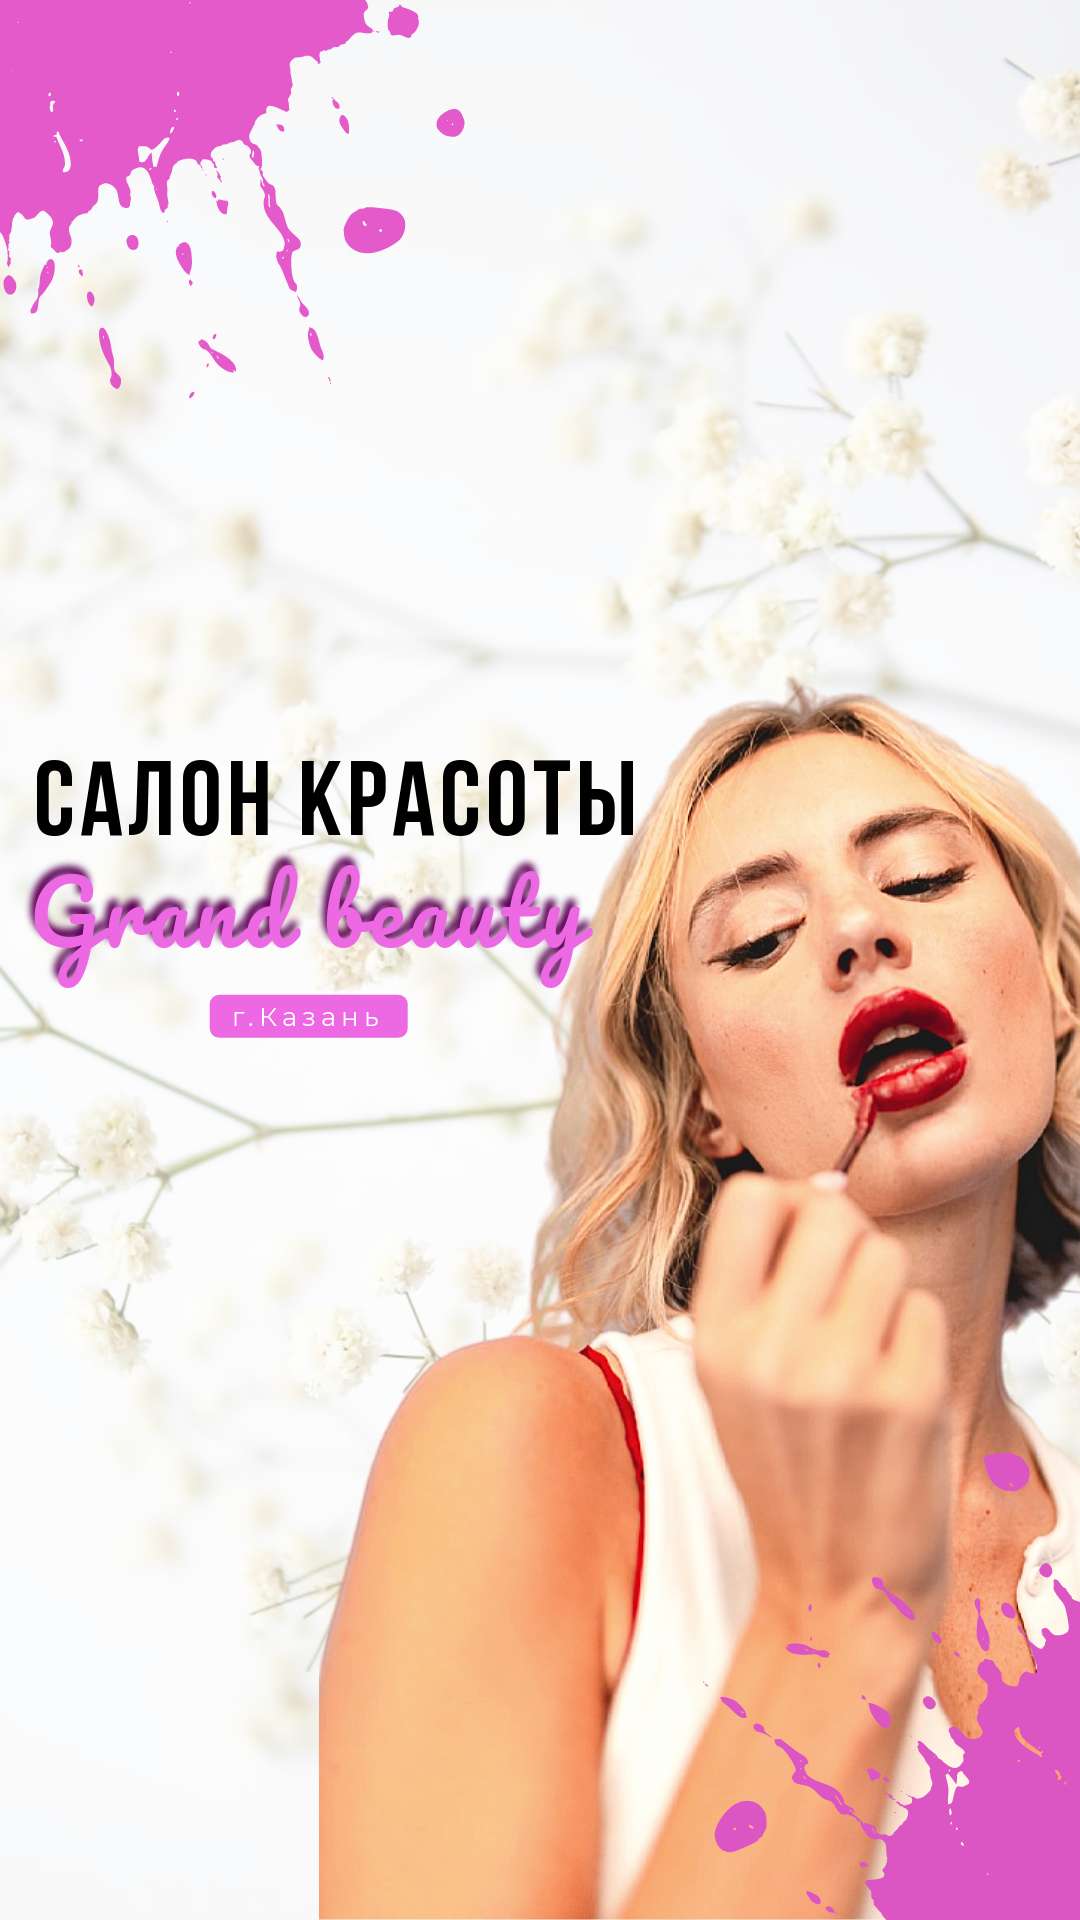 Розовая живая обложка сообщества Вконтакте на тему салонов красоты